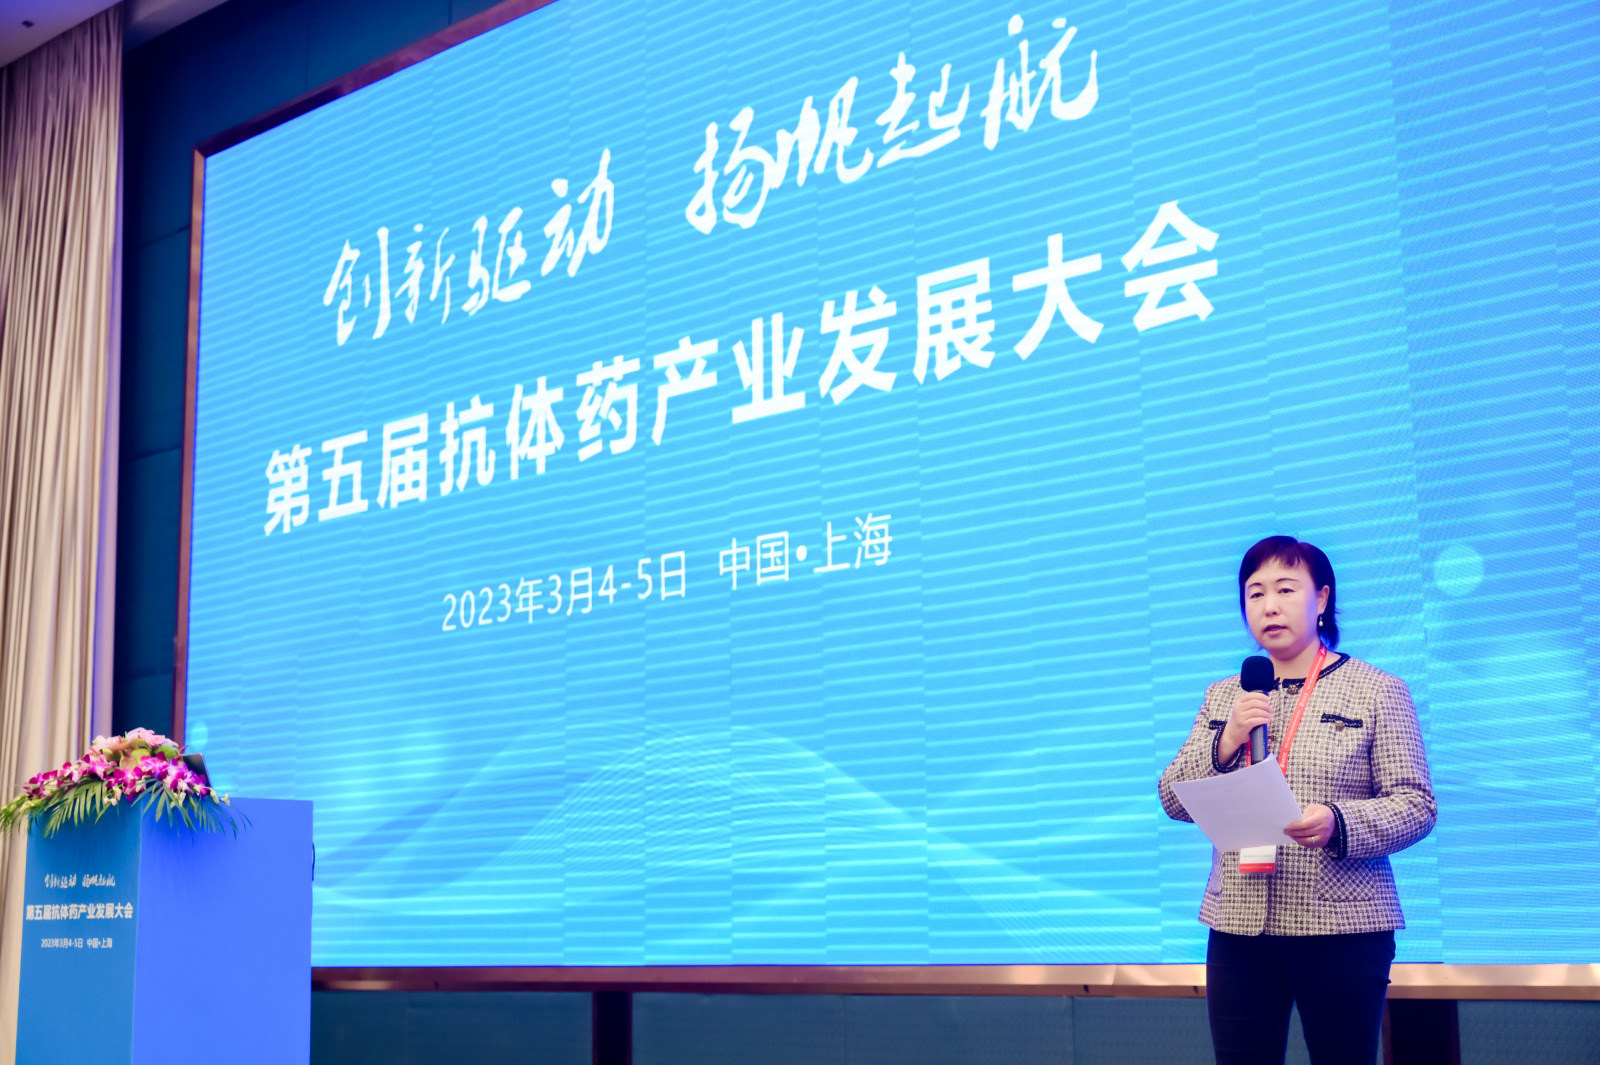 安普生物董事长赵新燕博士应邀主持第五届抗体药产业发展大会开幕和上午的主题报告。